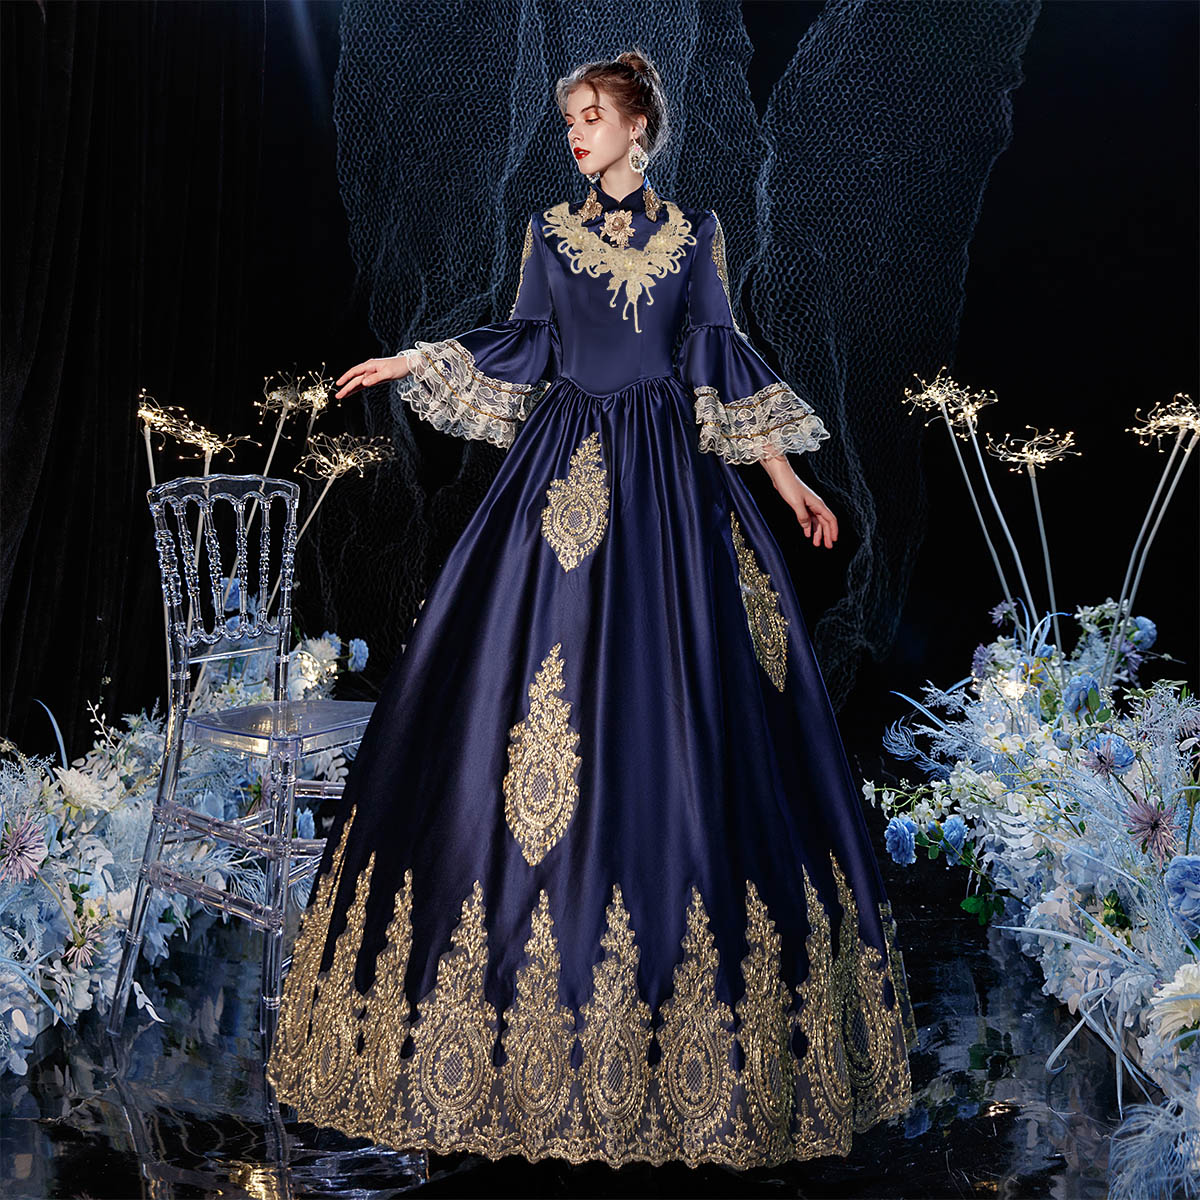 Medieval Reenactment Theater Dress Victorian Period Queen Dresses Halloween Costume